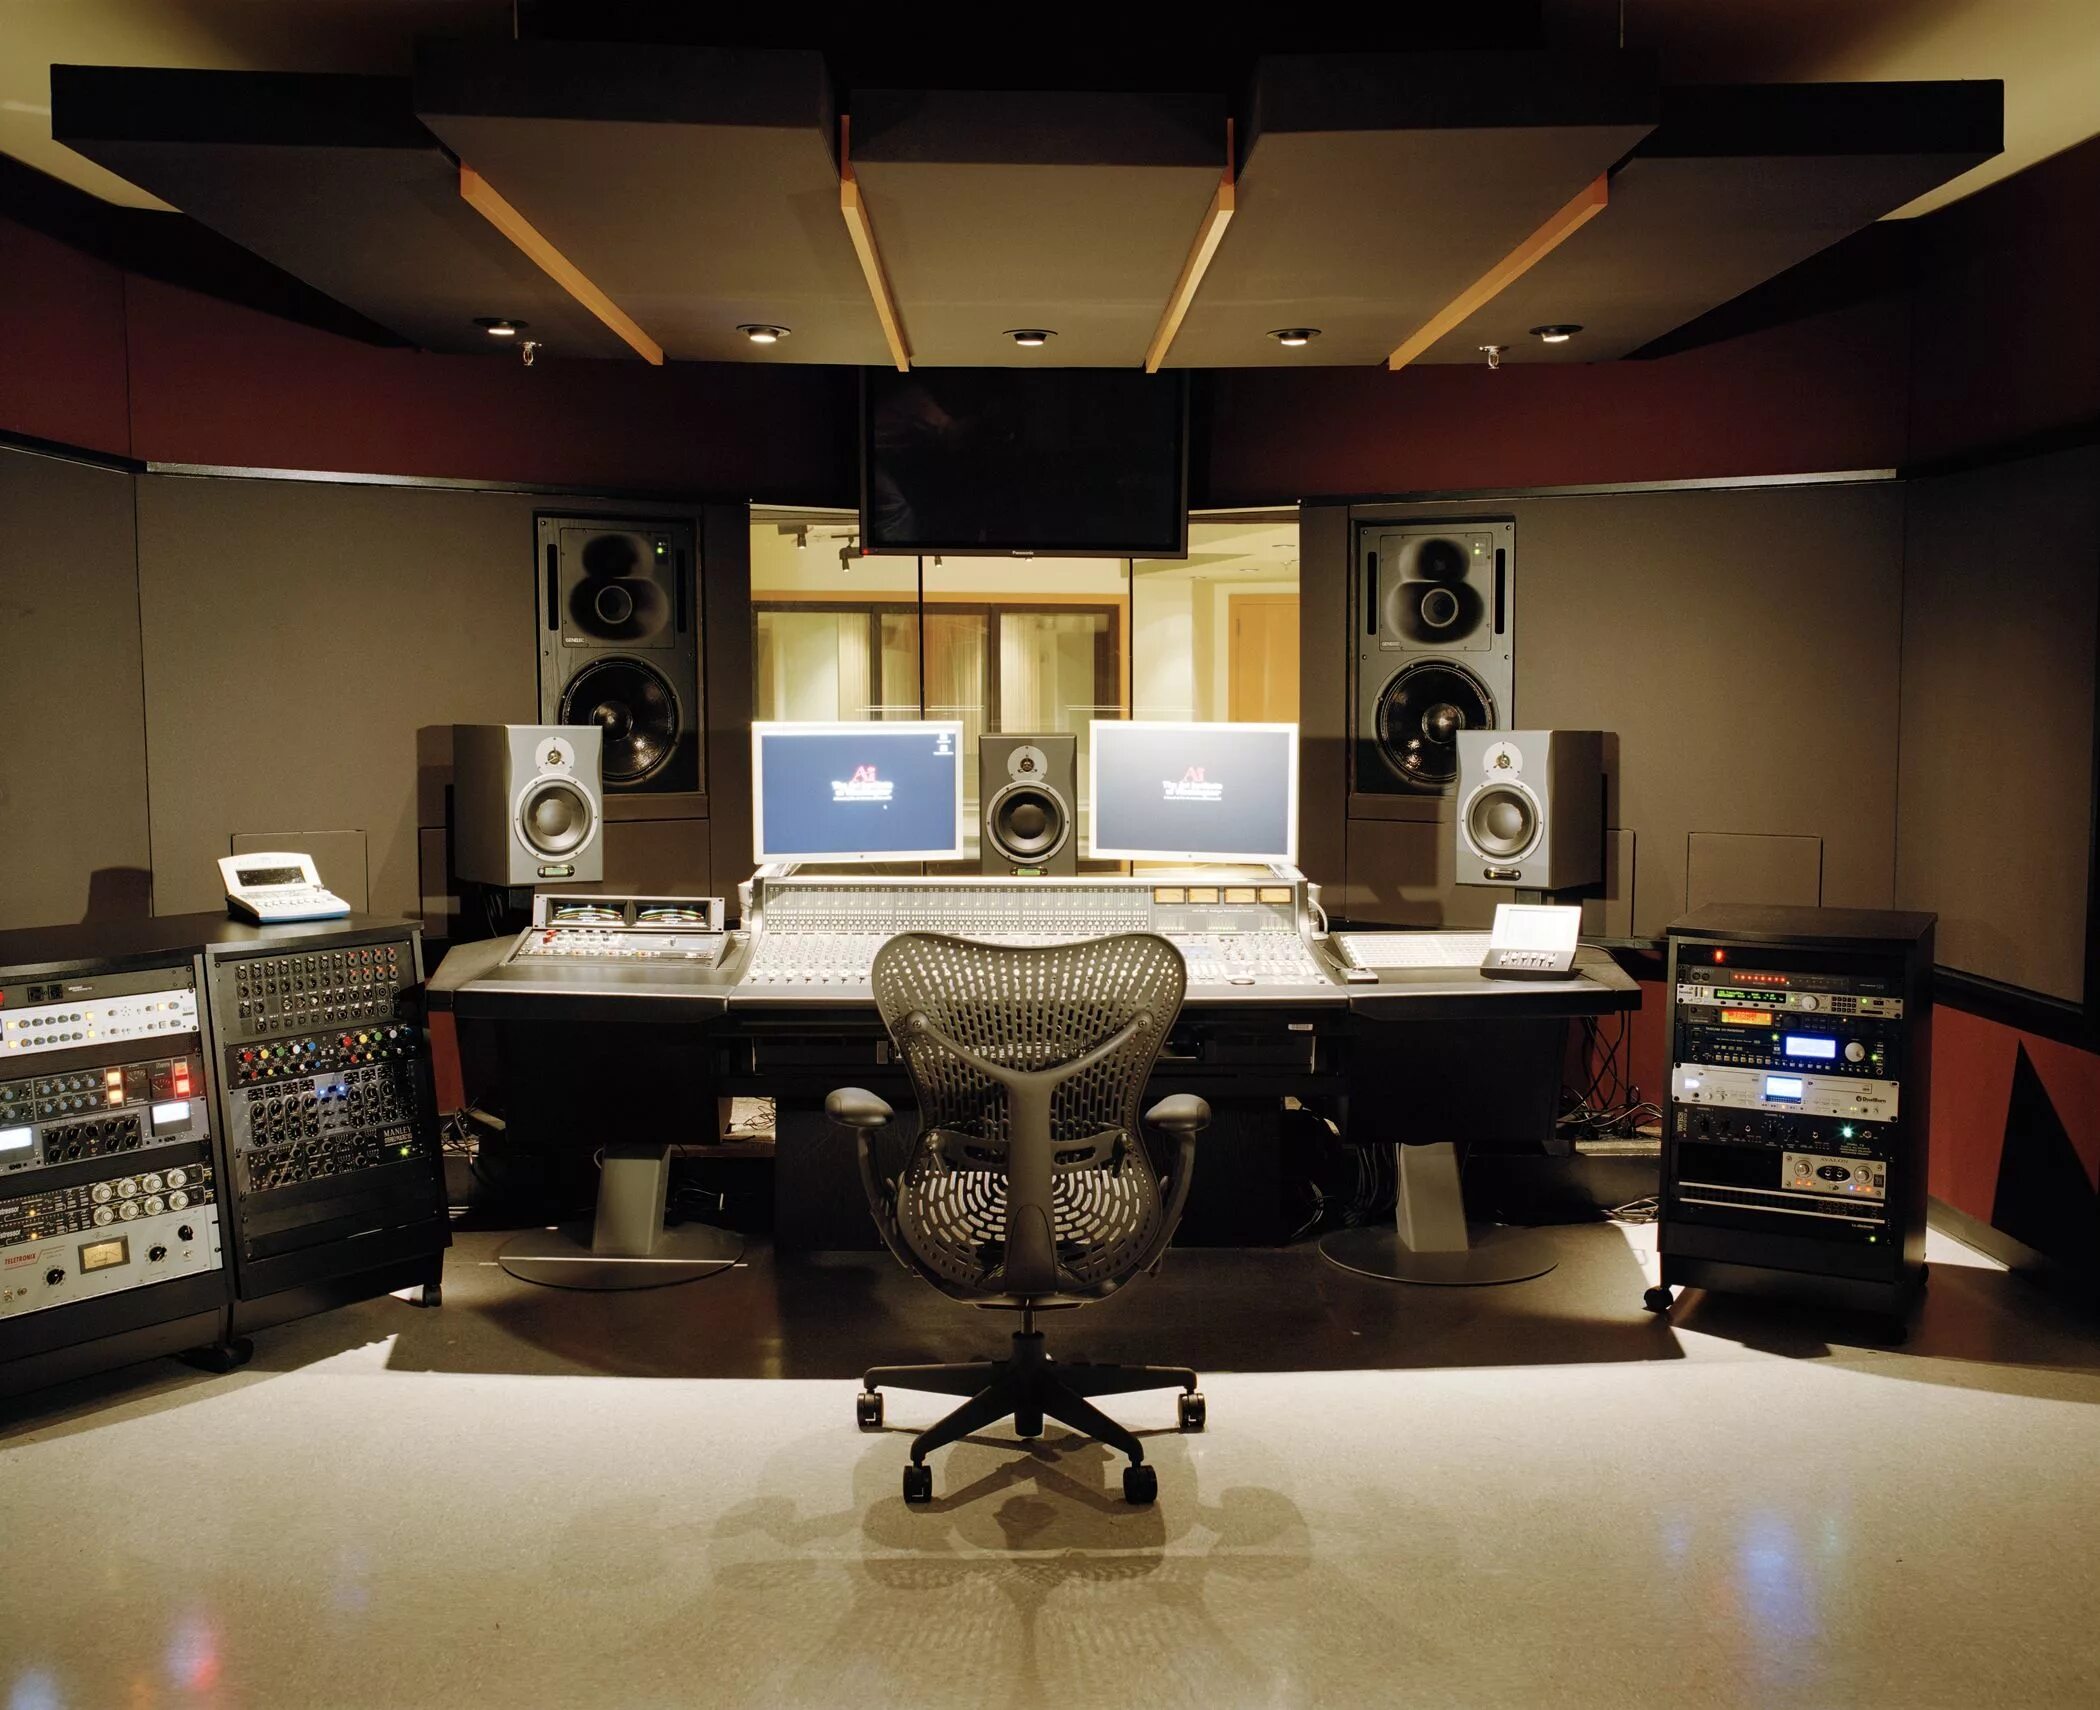 Музыкальная студия. Студия звукозаписи. Профессиональная музыкальная студия. Комната студия звукозаписи. Professional record